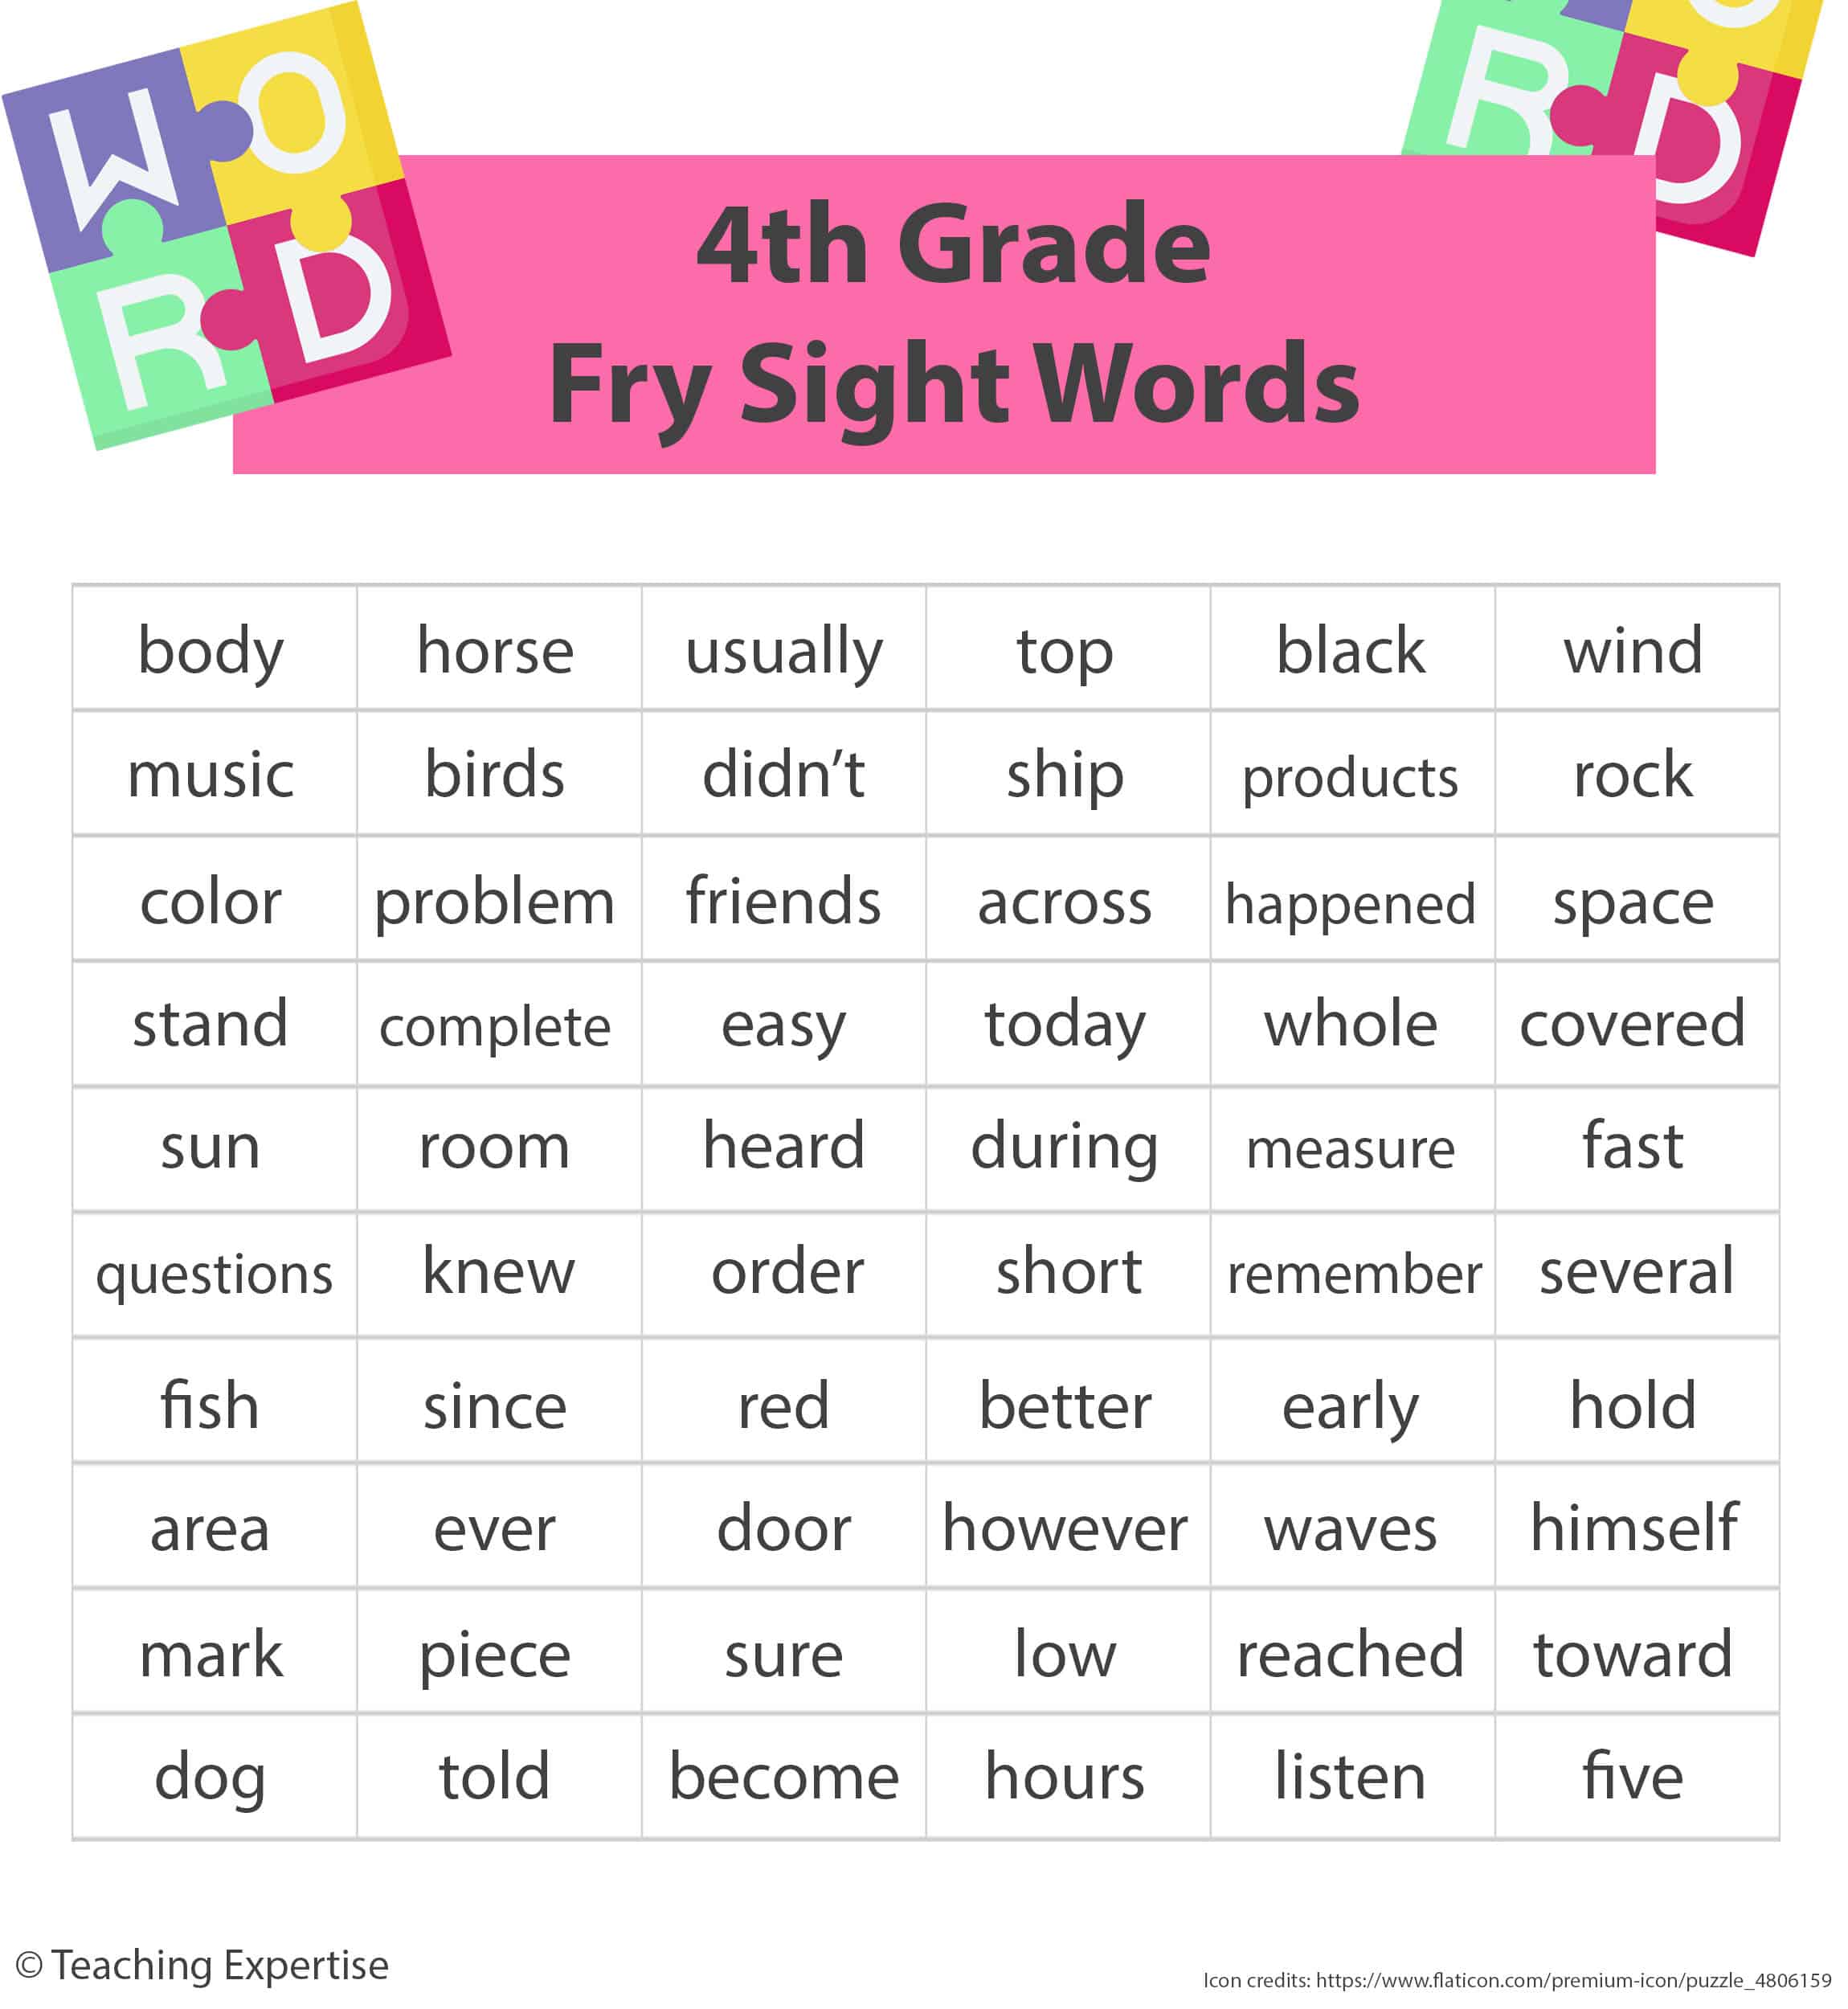 4th grade fry sight words